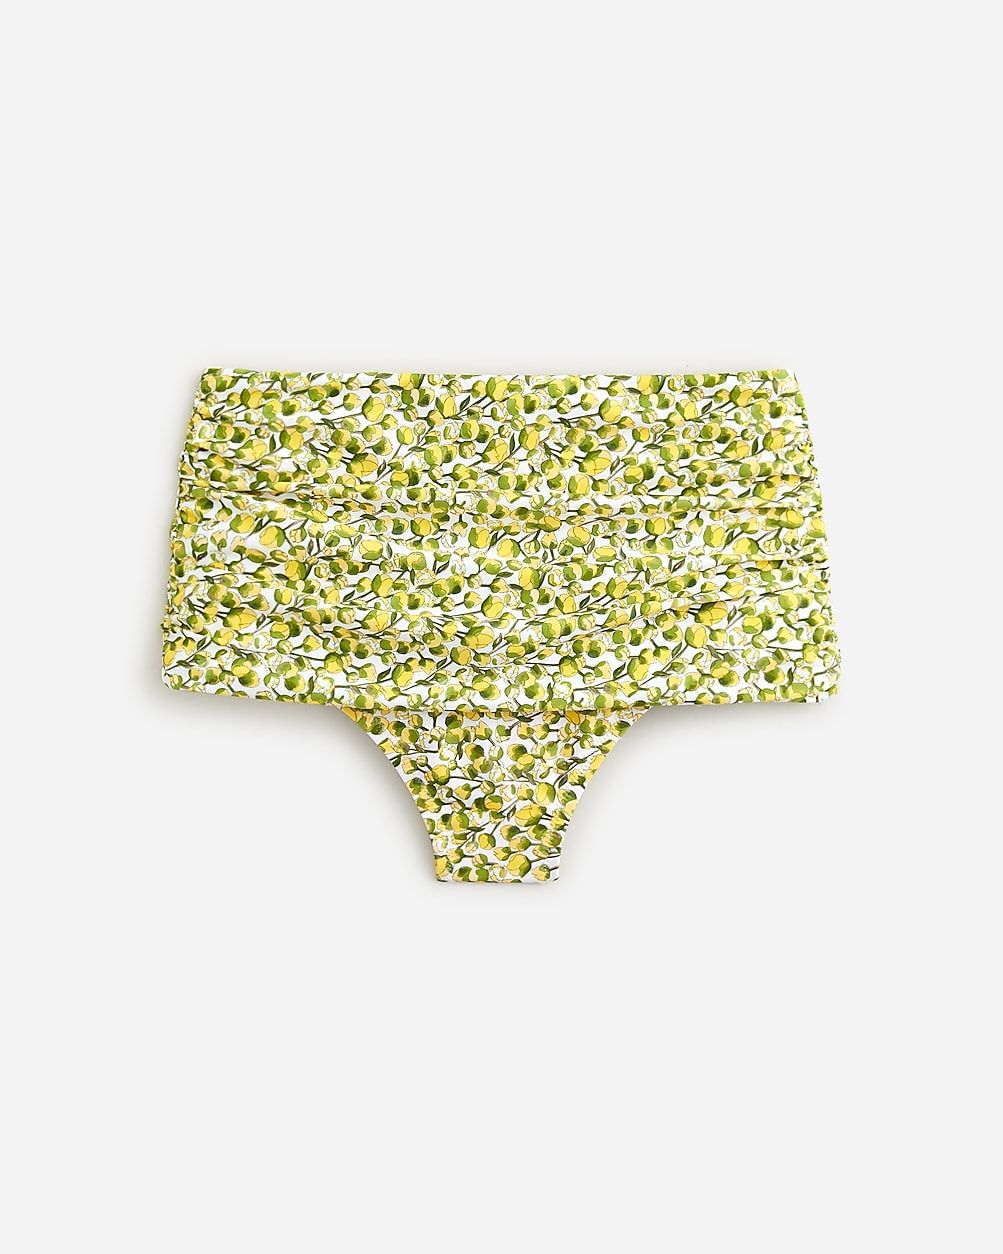 Ruched high-rise bikini bottom in Liberty® Eliza's Yellow fabric | J.Crew US